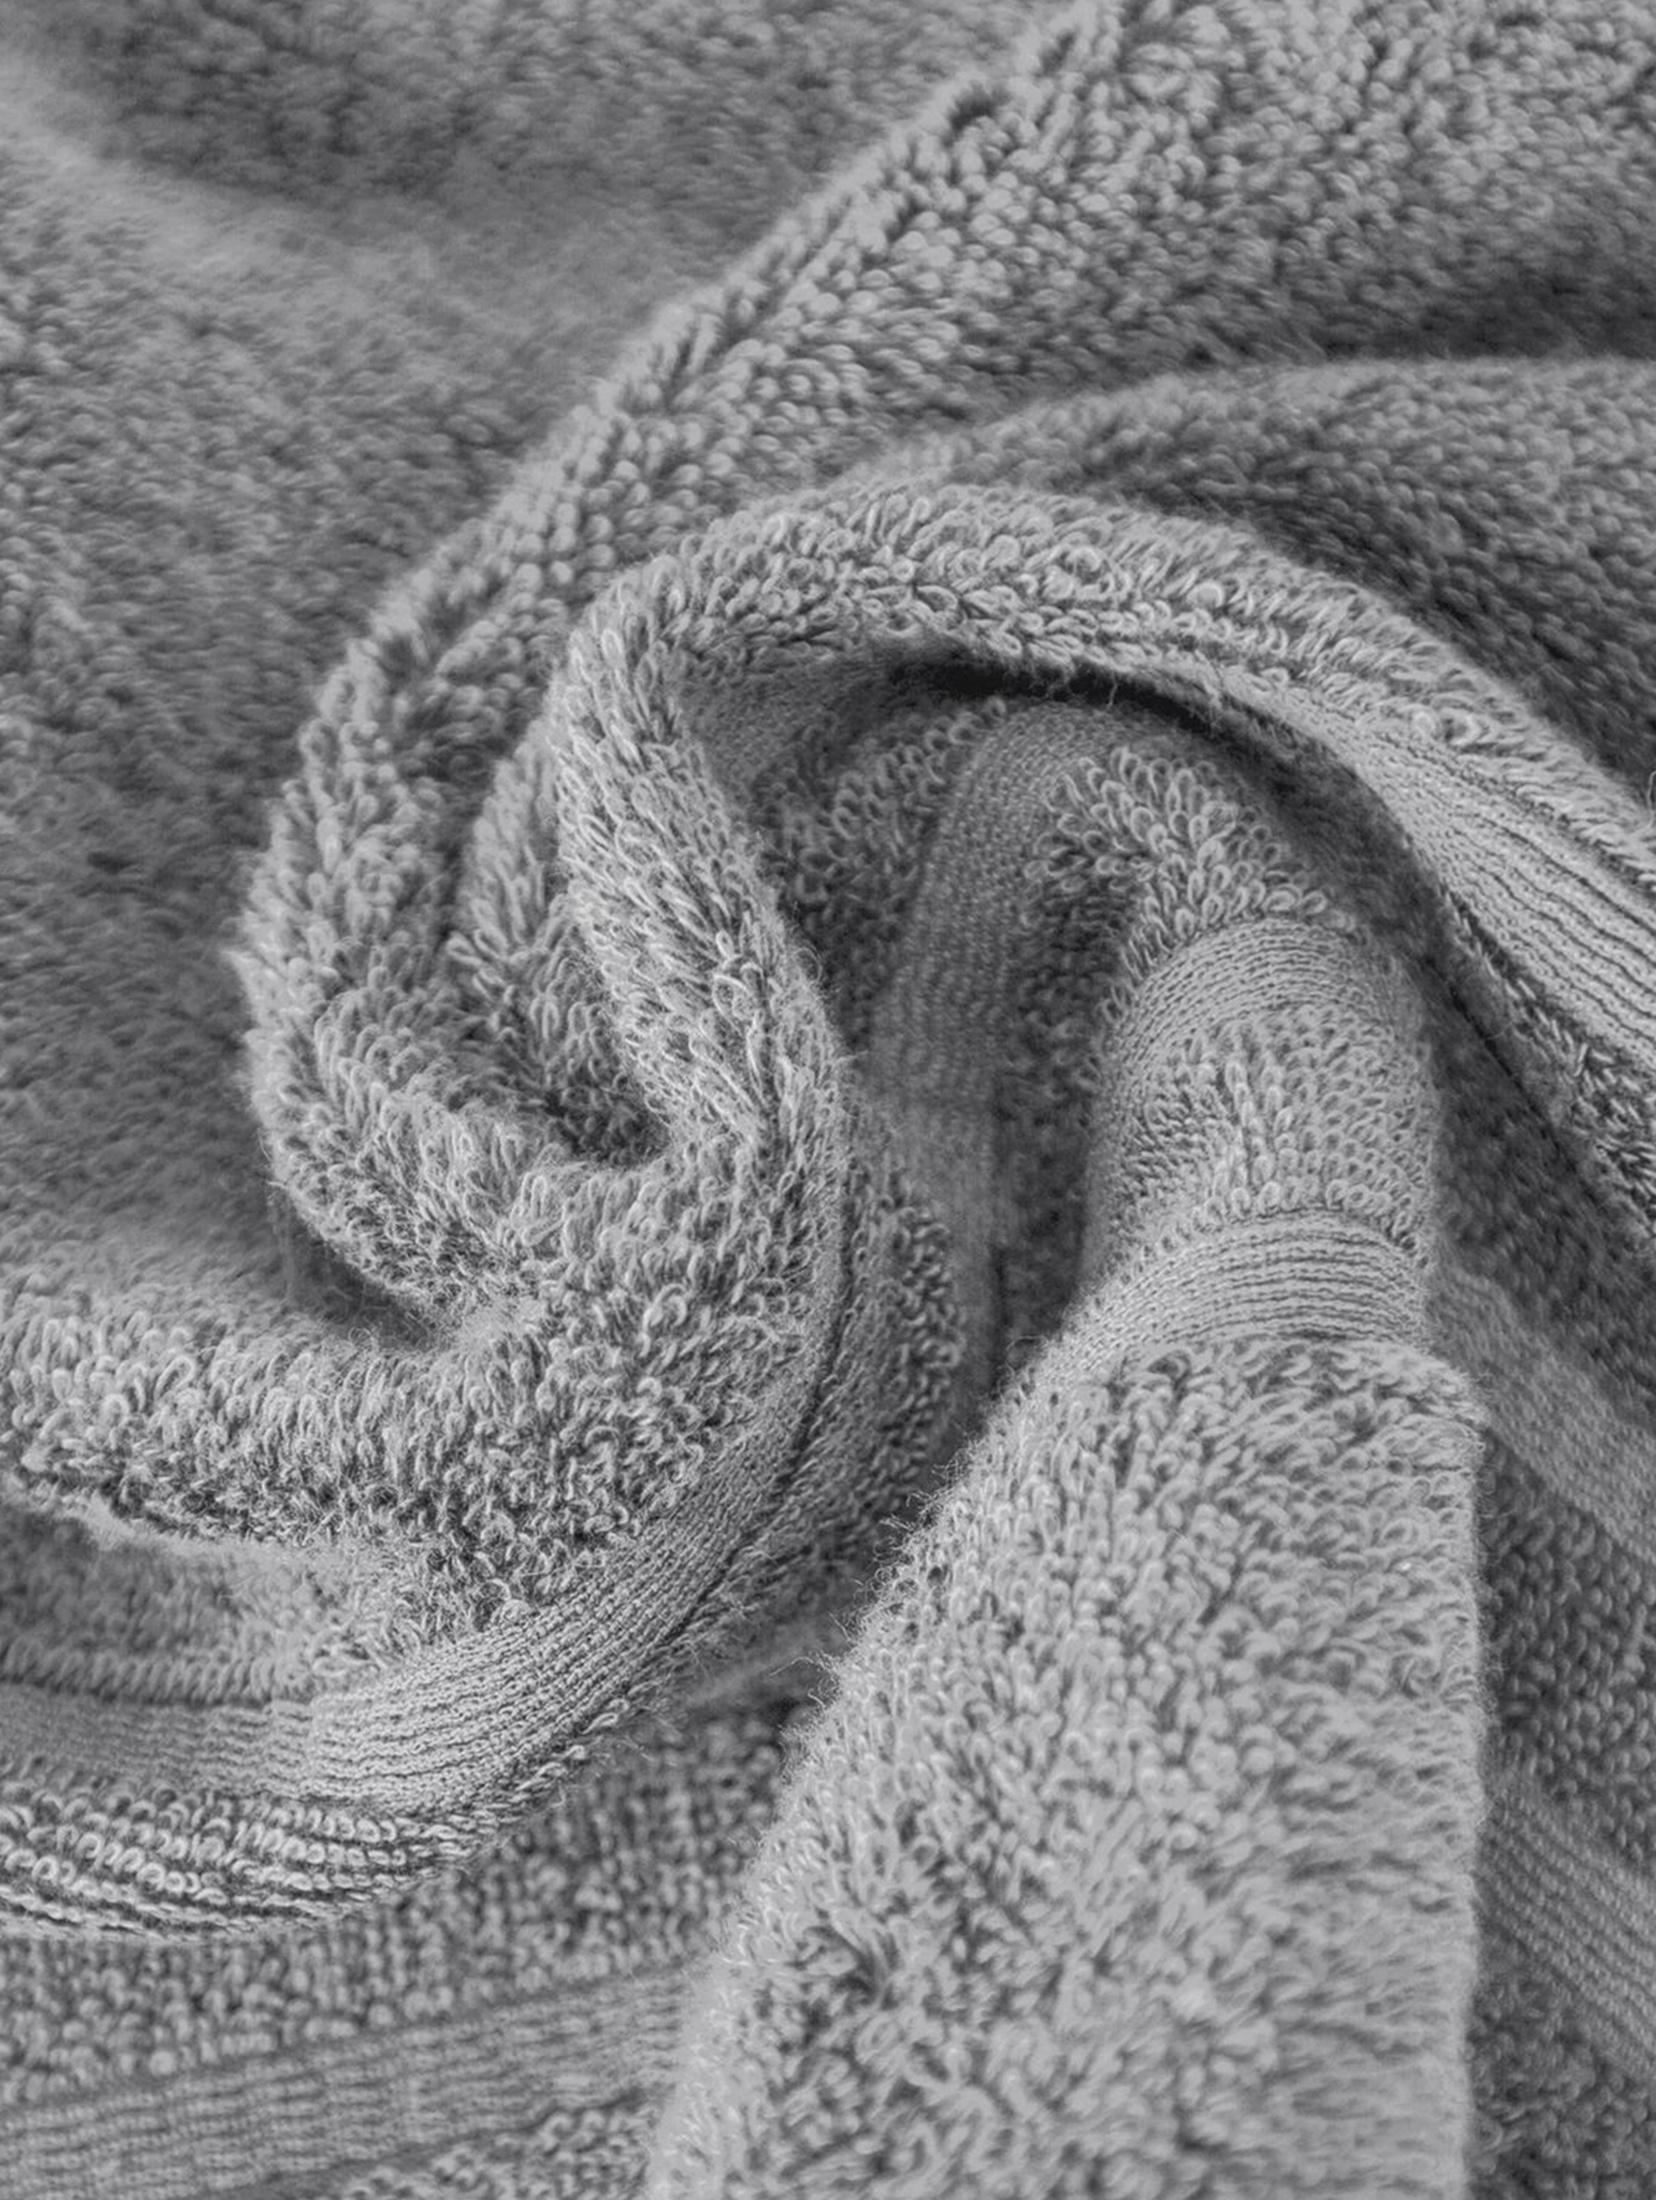 Ręcznik lavin (03) 50x90 cm szary